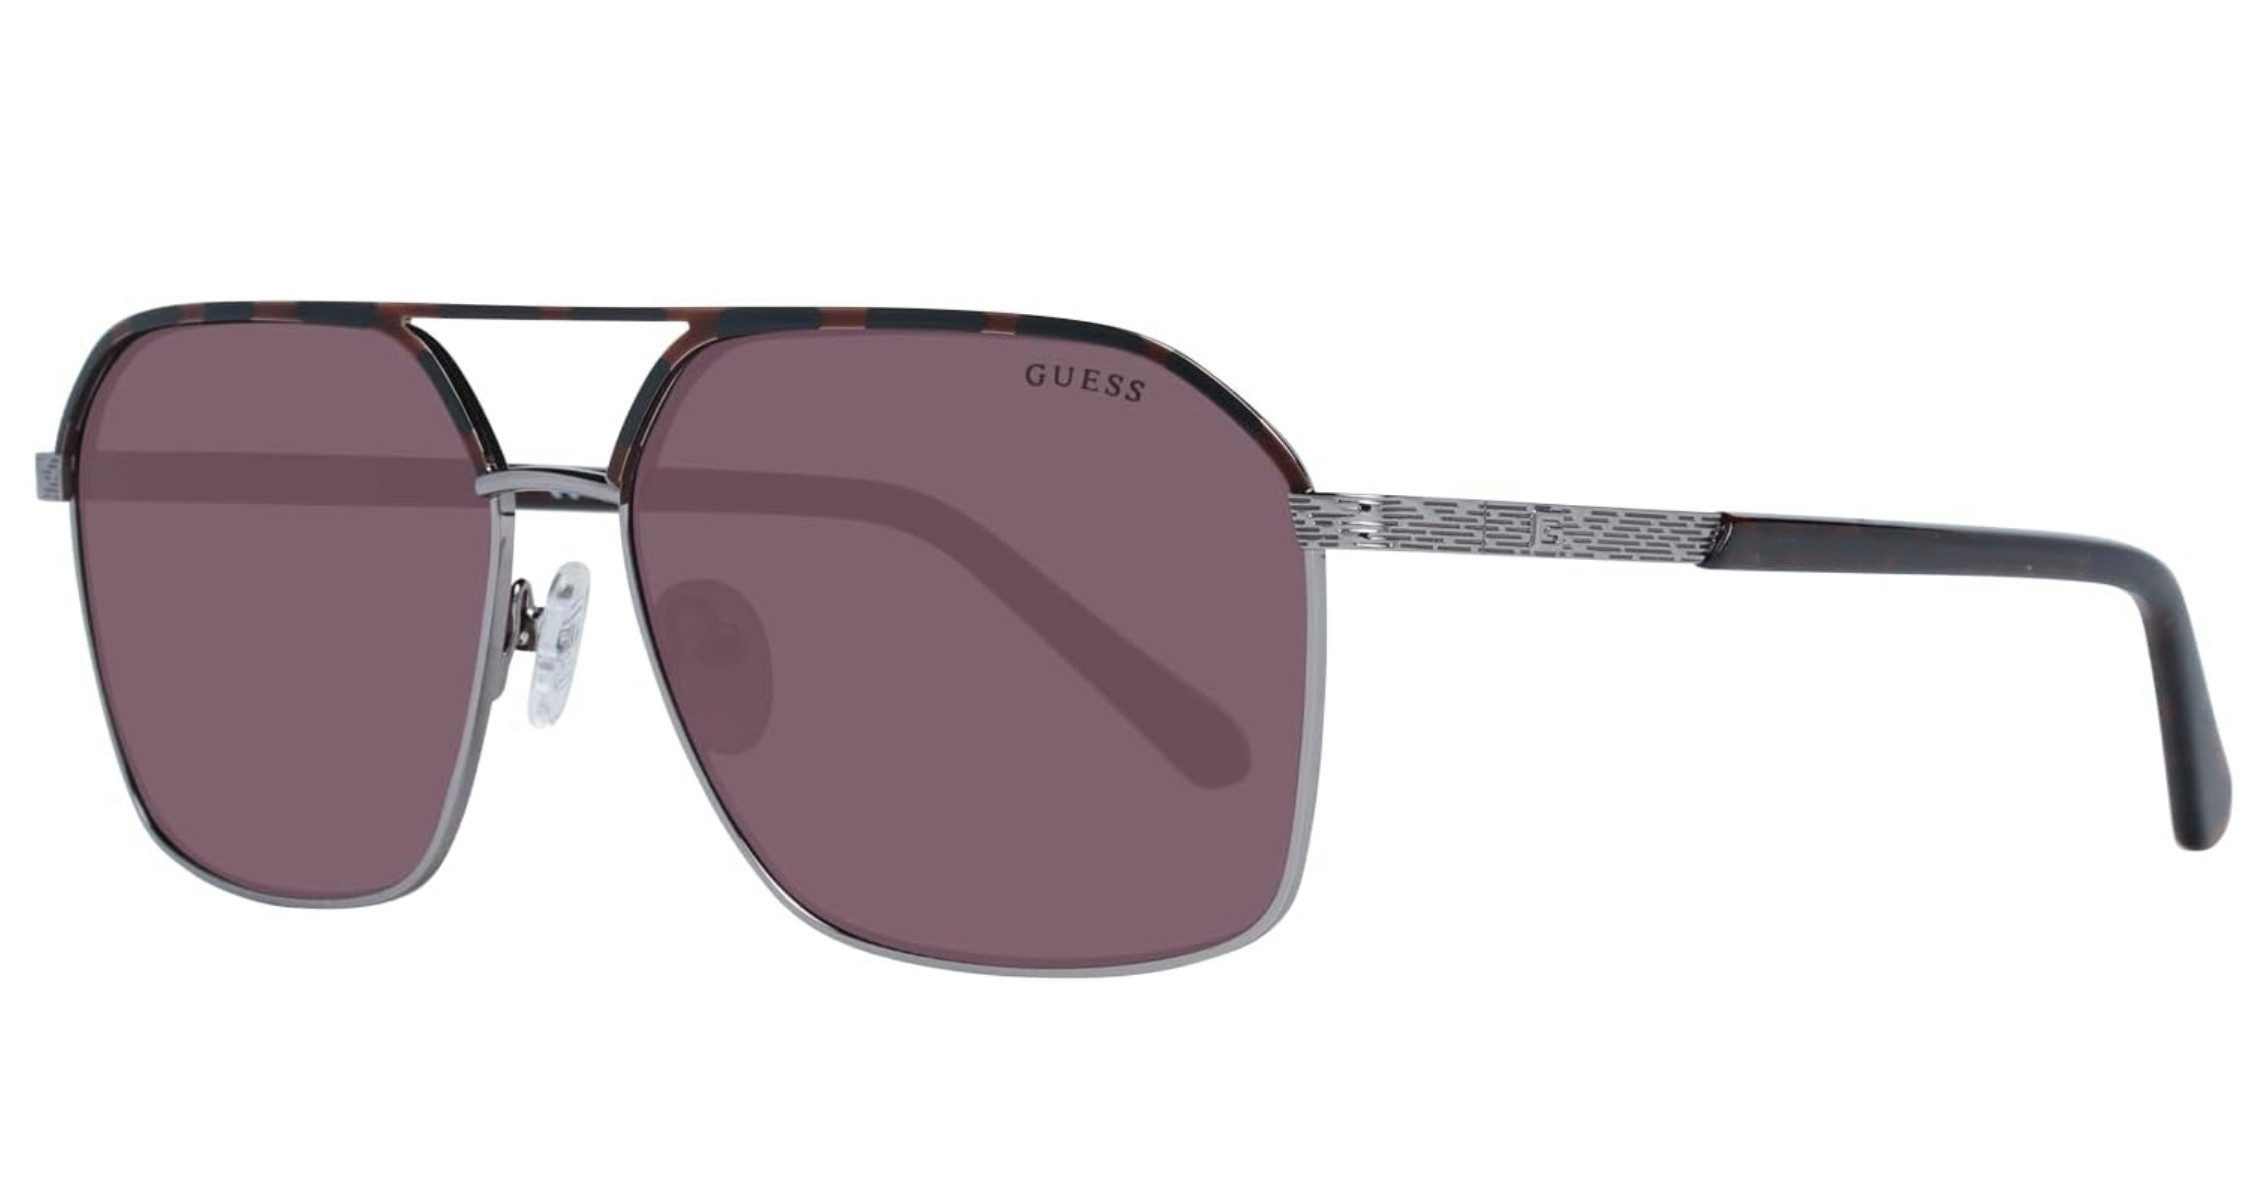 Guess Sonnenbrille Sonnenbrille Fliegerbrille Sunglasses Glasses Brille Mit Etui Tasche Linsen: Farbverlauf - Schutz: 100% UVA & UVB